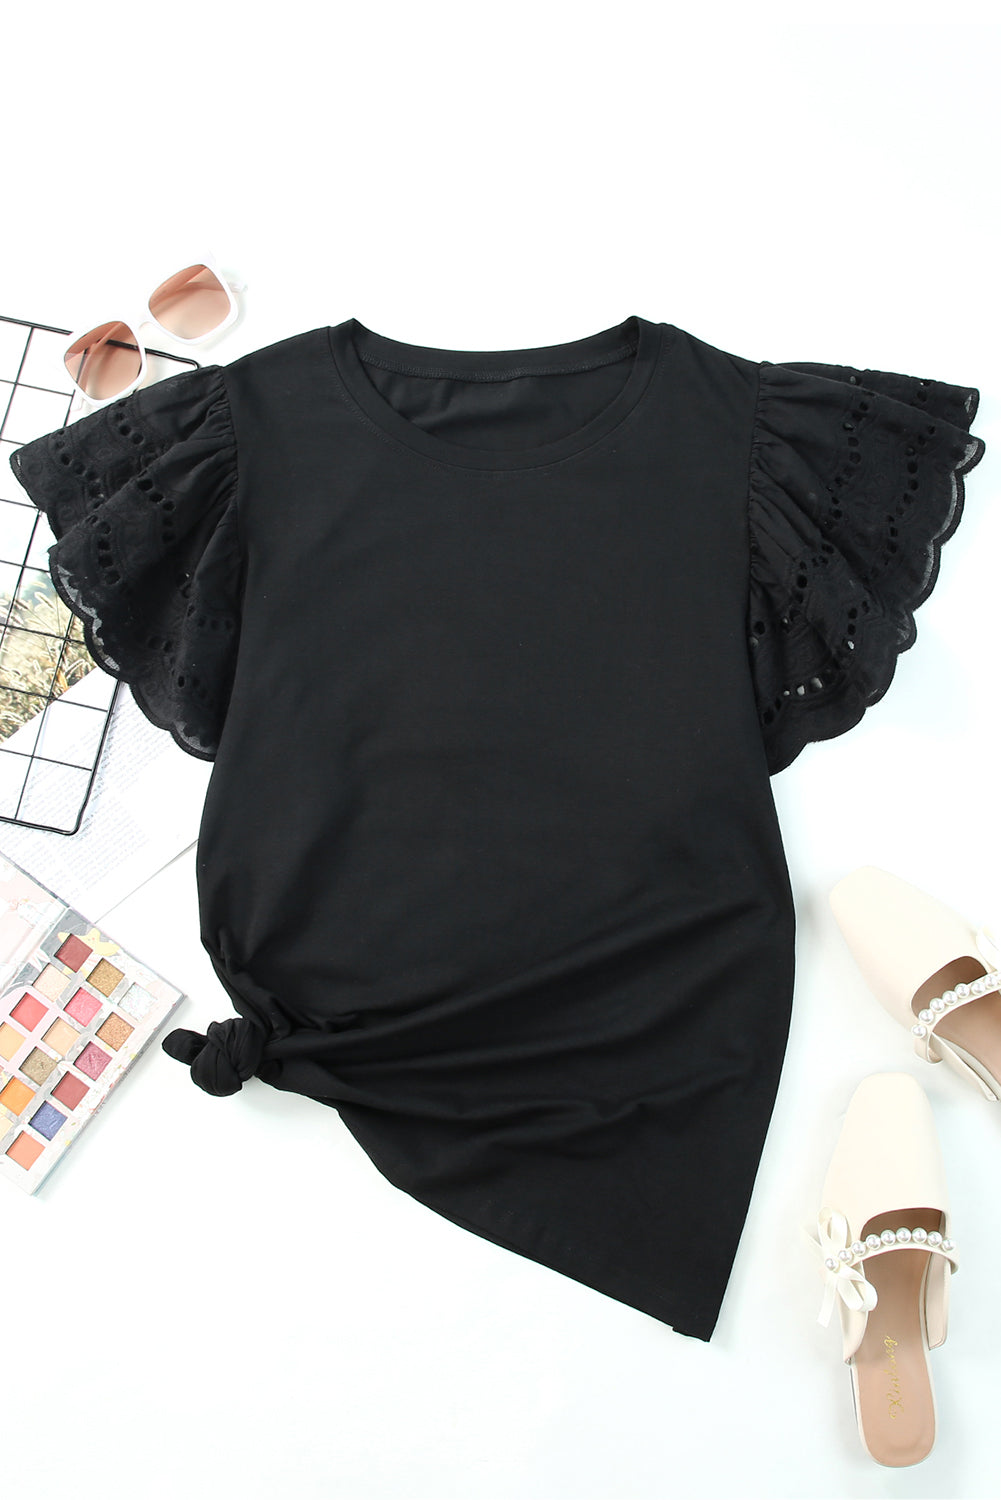 Black Plus Size Flutter Sleeve Top Plus Size Tops JT's Designer Fashion